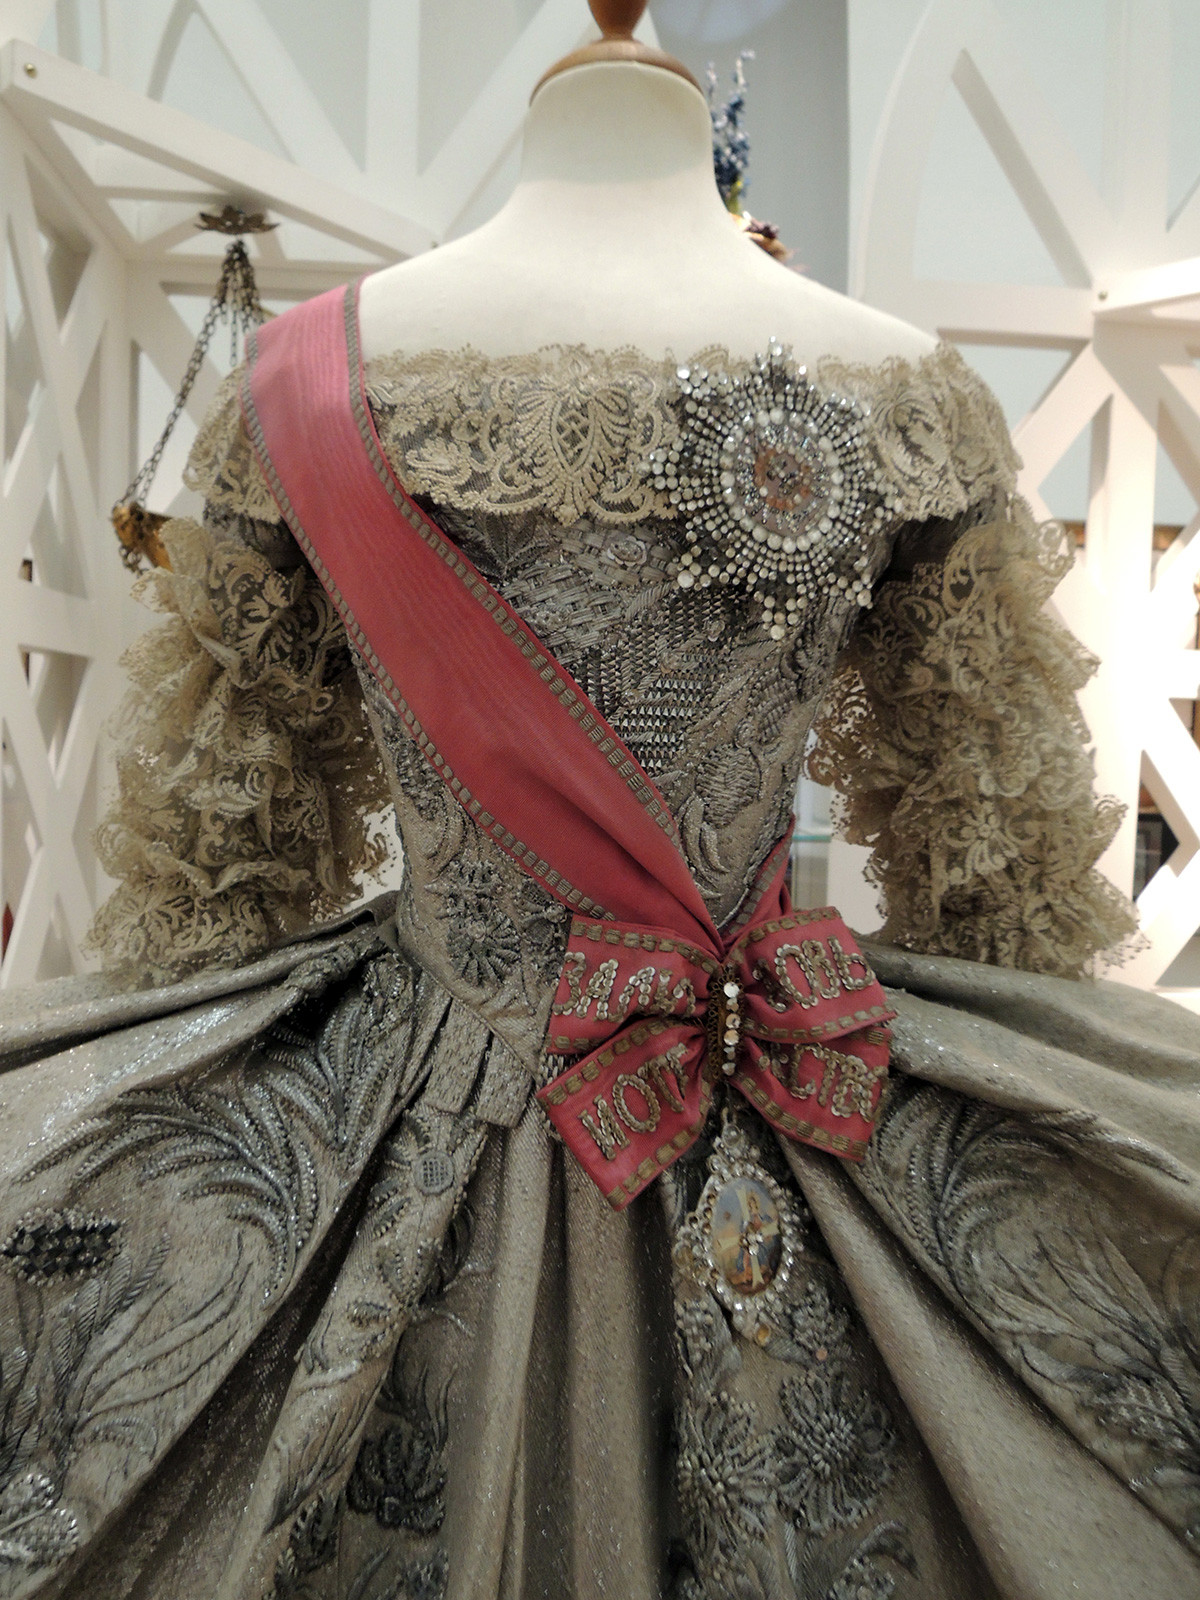 エカテリーナ・アレクセーエヴナ（エカテリーナ2世）のウエディングドレスのレプリカ。